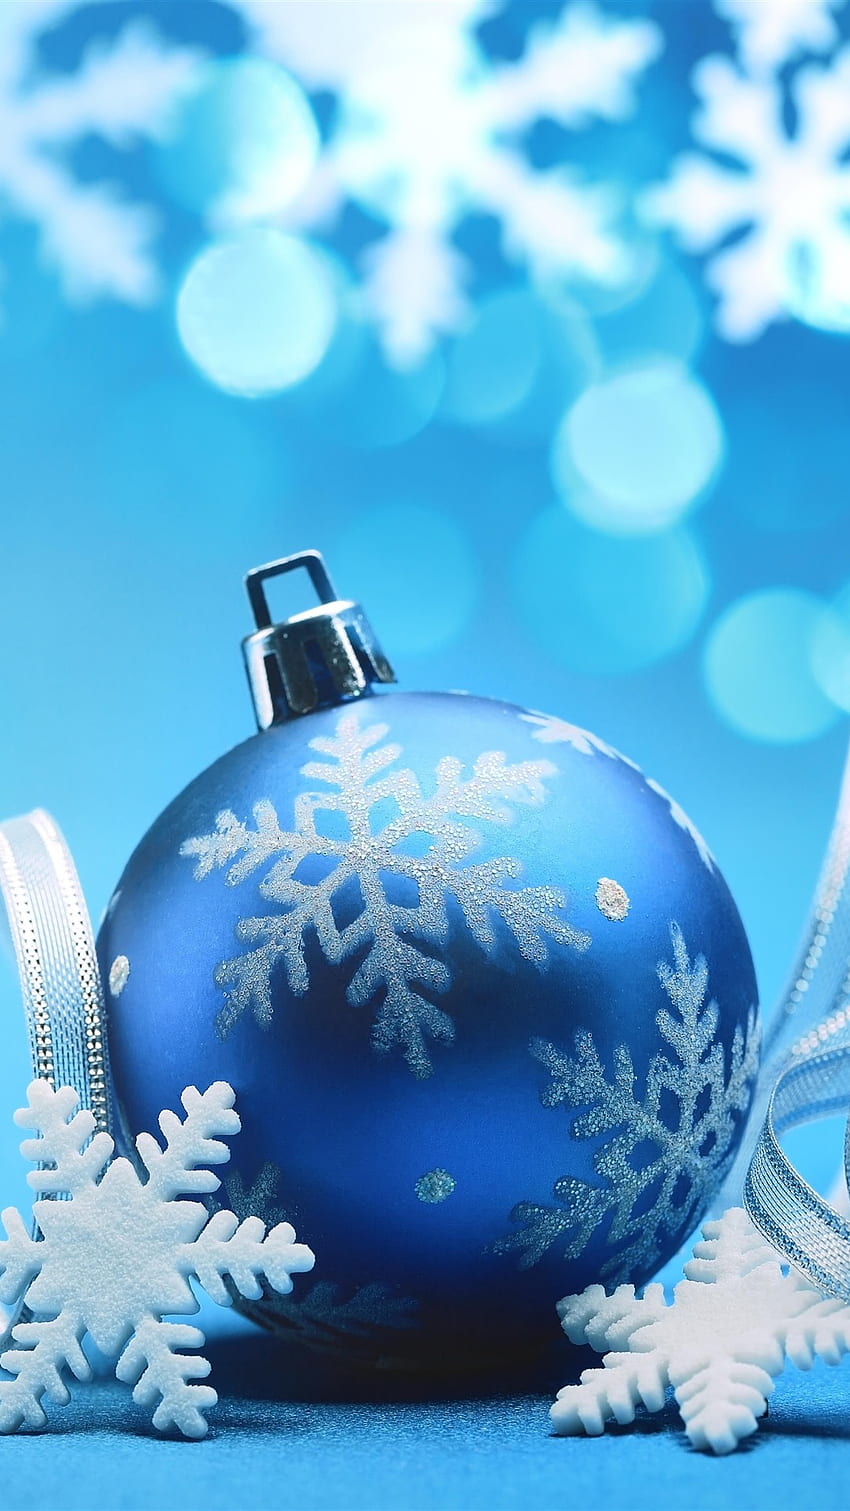 Đồ trang trí Giáng sinh xanh: Giáng sinh có thể không chỉ là màu đỏ truyền thống nữa. Sắc xanh mát mắt chắc chắn sẽ mang lại cho người xem cảm giác thật sảng khoái. Hãy cùng chiêm ngưỡng những chiếc vòng tròn cây thông, các hình ảnh tuyết rơi, và những món đồ trang trí Giáng sinh xanh lấp lánh trên những tấm hình thật đẹp nhé!